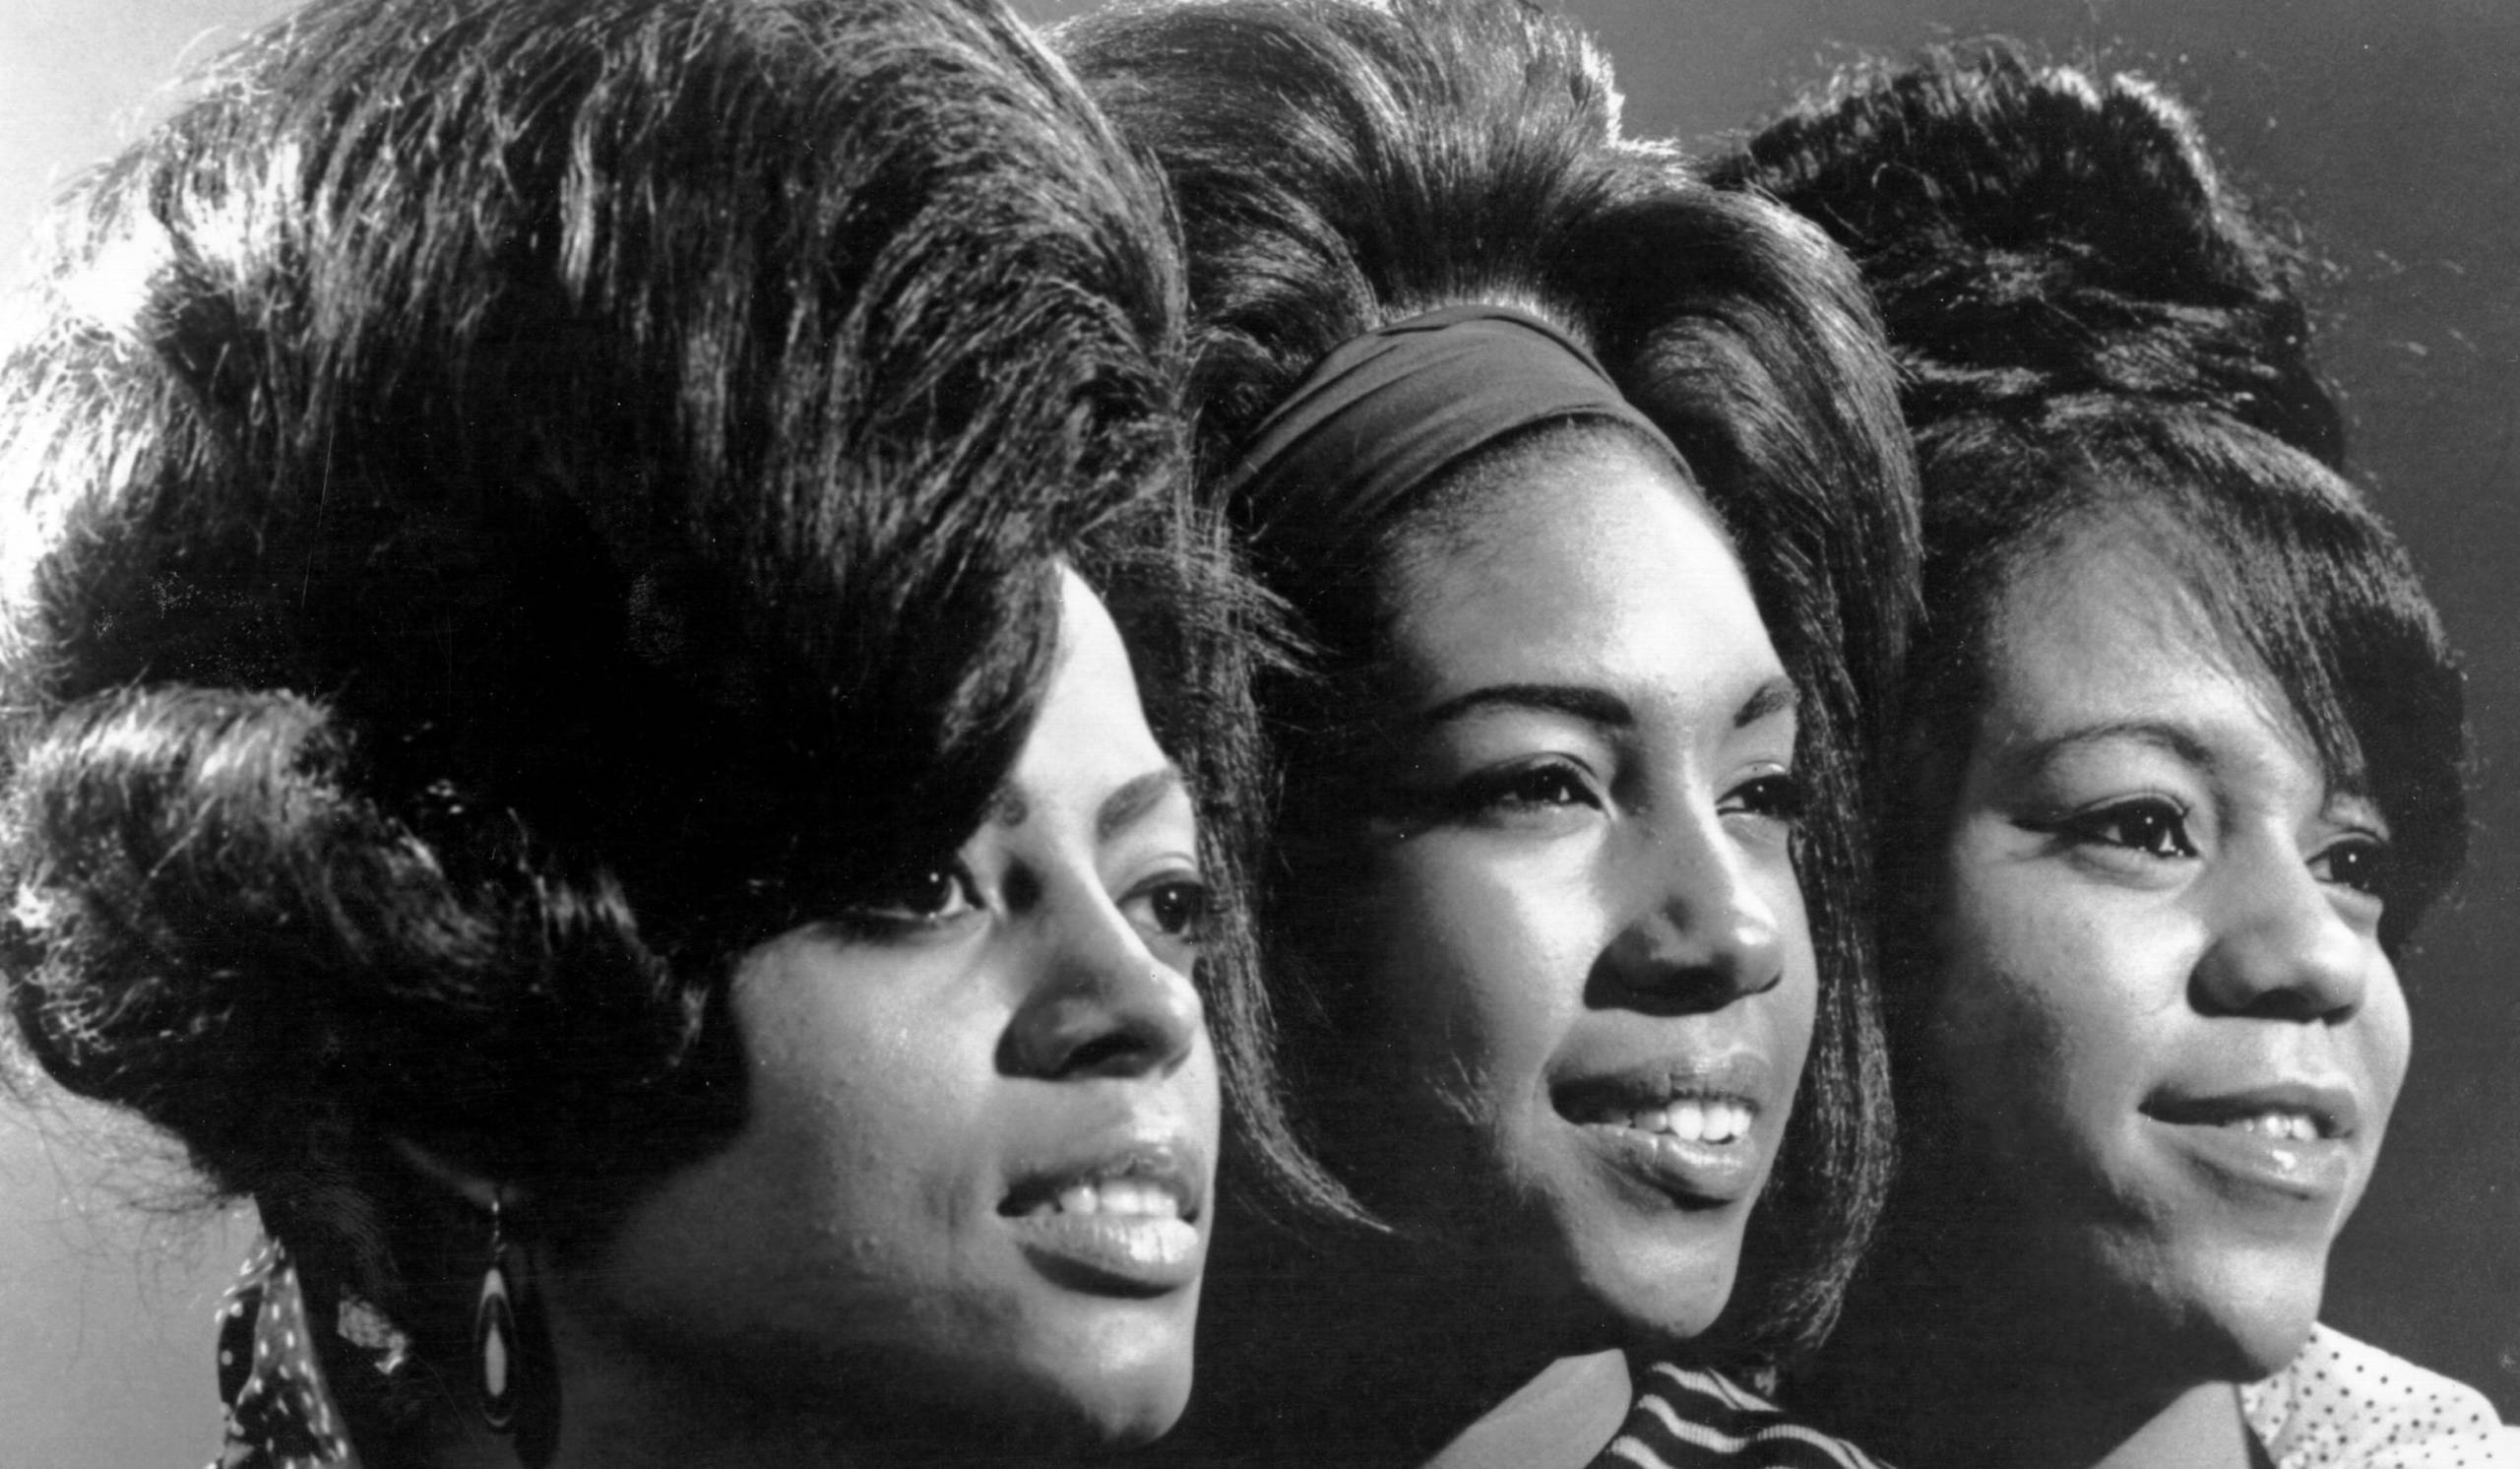 The Supremes in den frühen 60ern - ein Bild mit Barbara Martin existiert in den Archiven nicht